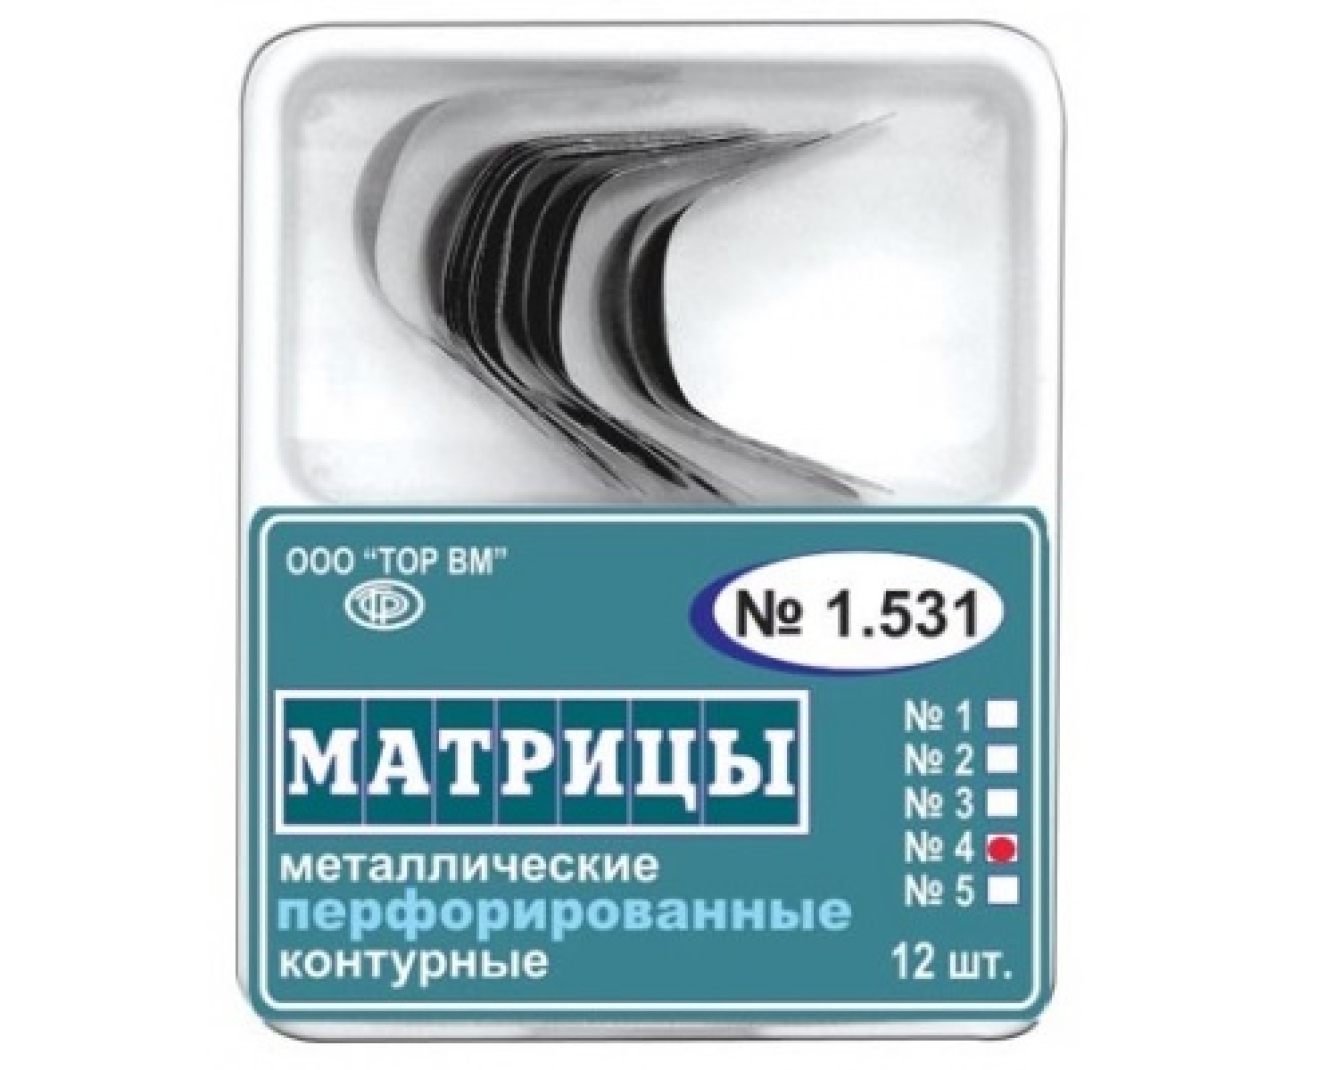 Матрицы металлические, контурные, перфорированные, большие с выступом, 1.531(4), ТОР ВМ (Россия)